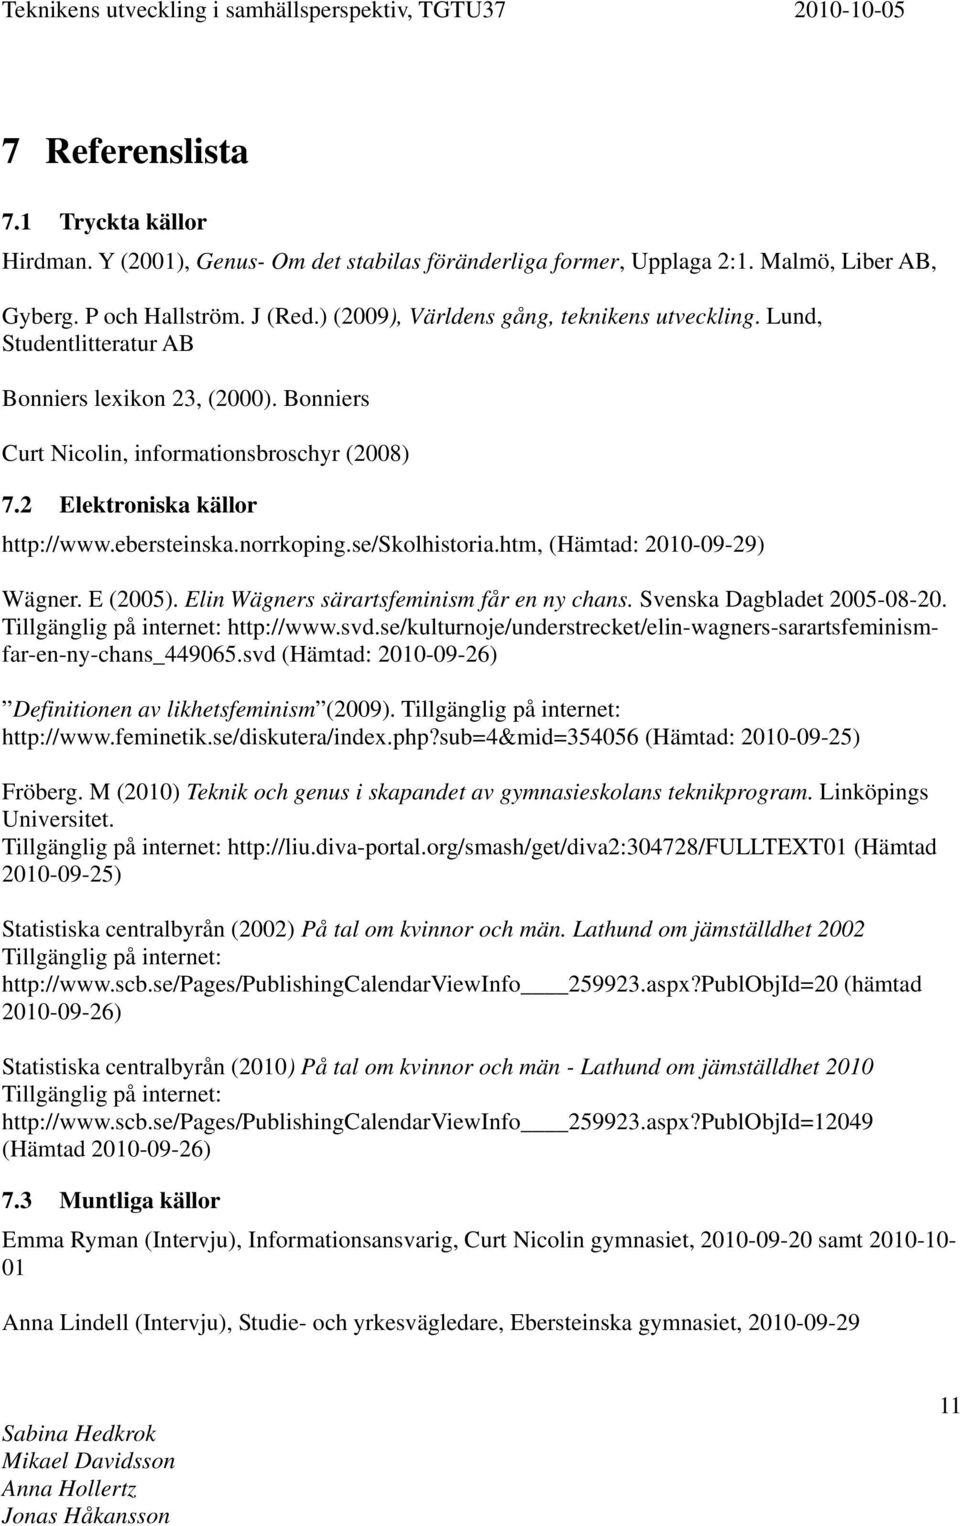 ebersteinska.norrkoping.se/skolhistoria.htm, (Hämtad: 2010-09-29) Wägner. E (2005). Elin Wägners särartsfeminism får en ny chans. Svenska Dagbladet 2005-08-20. Tillgänglig på internet: http://www.svd.